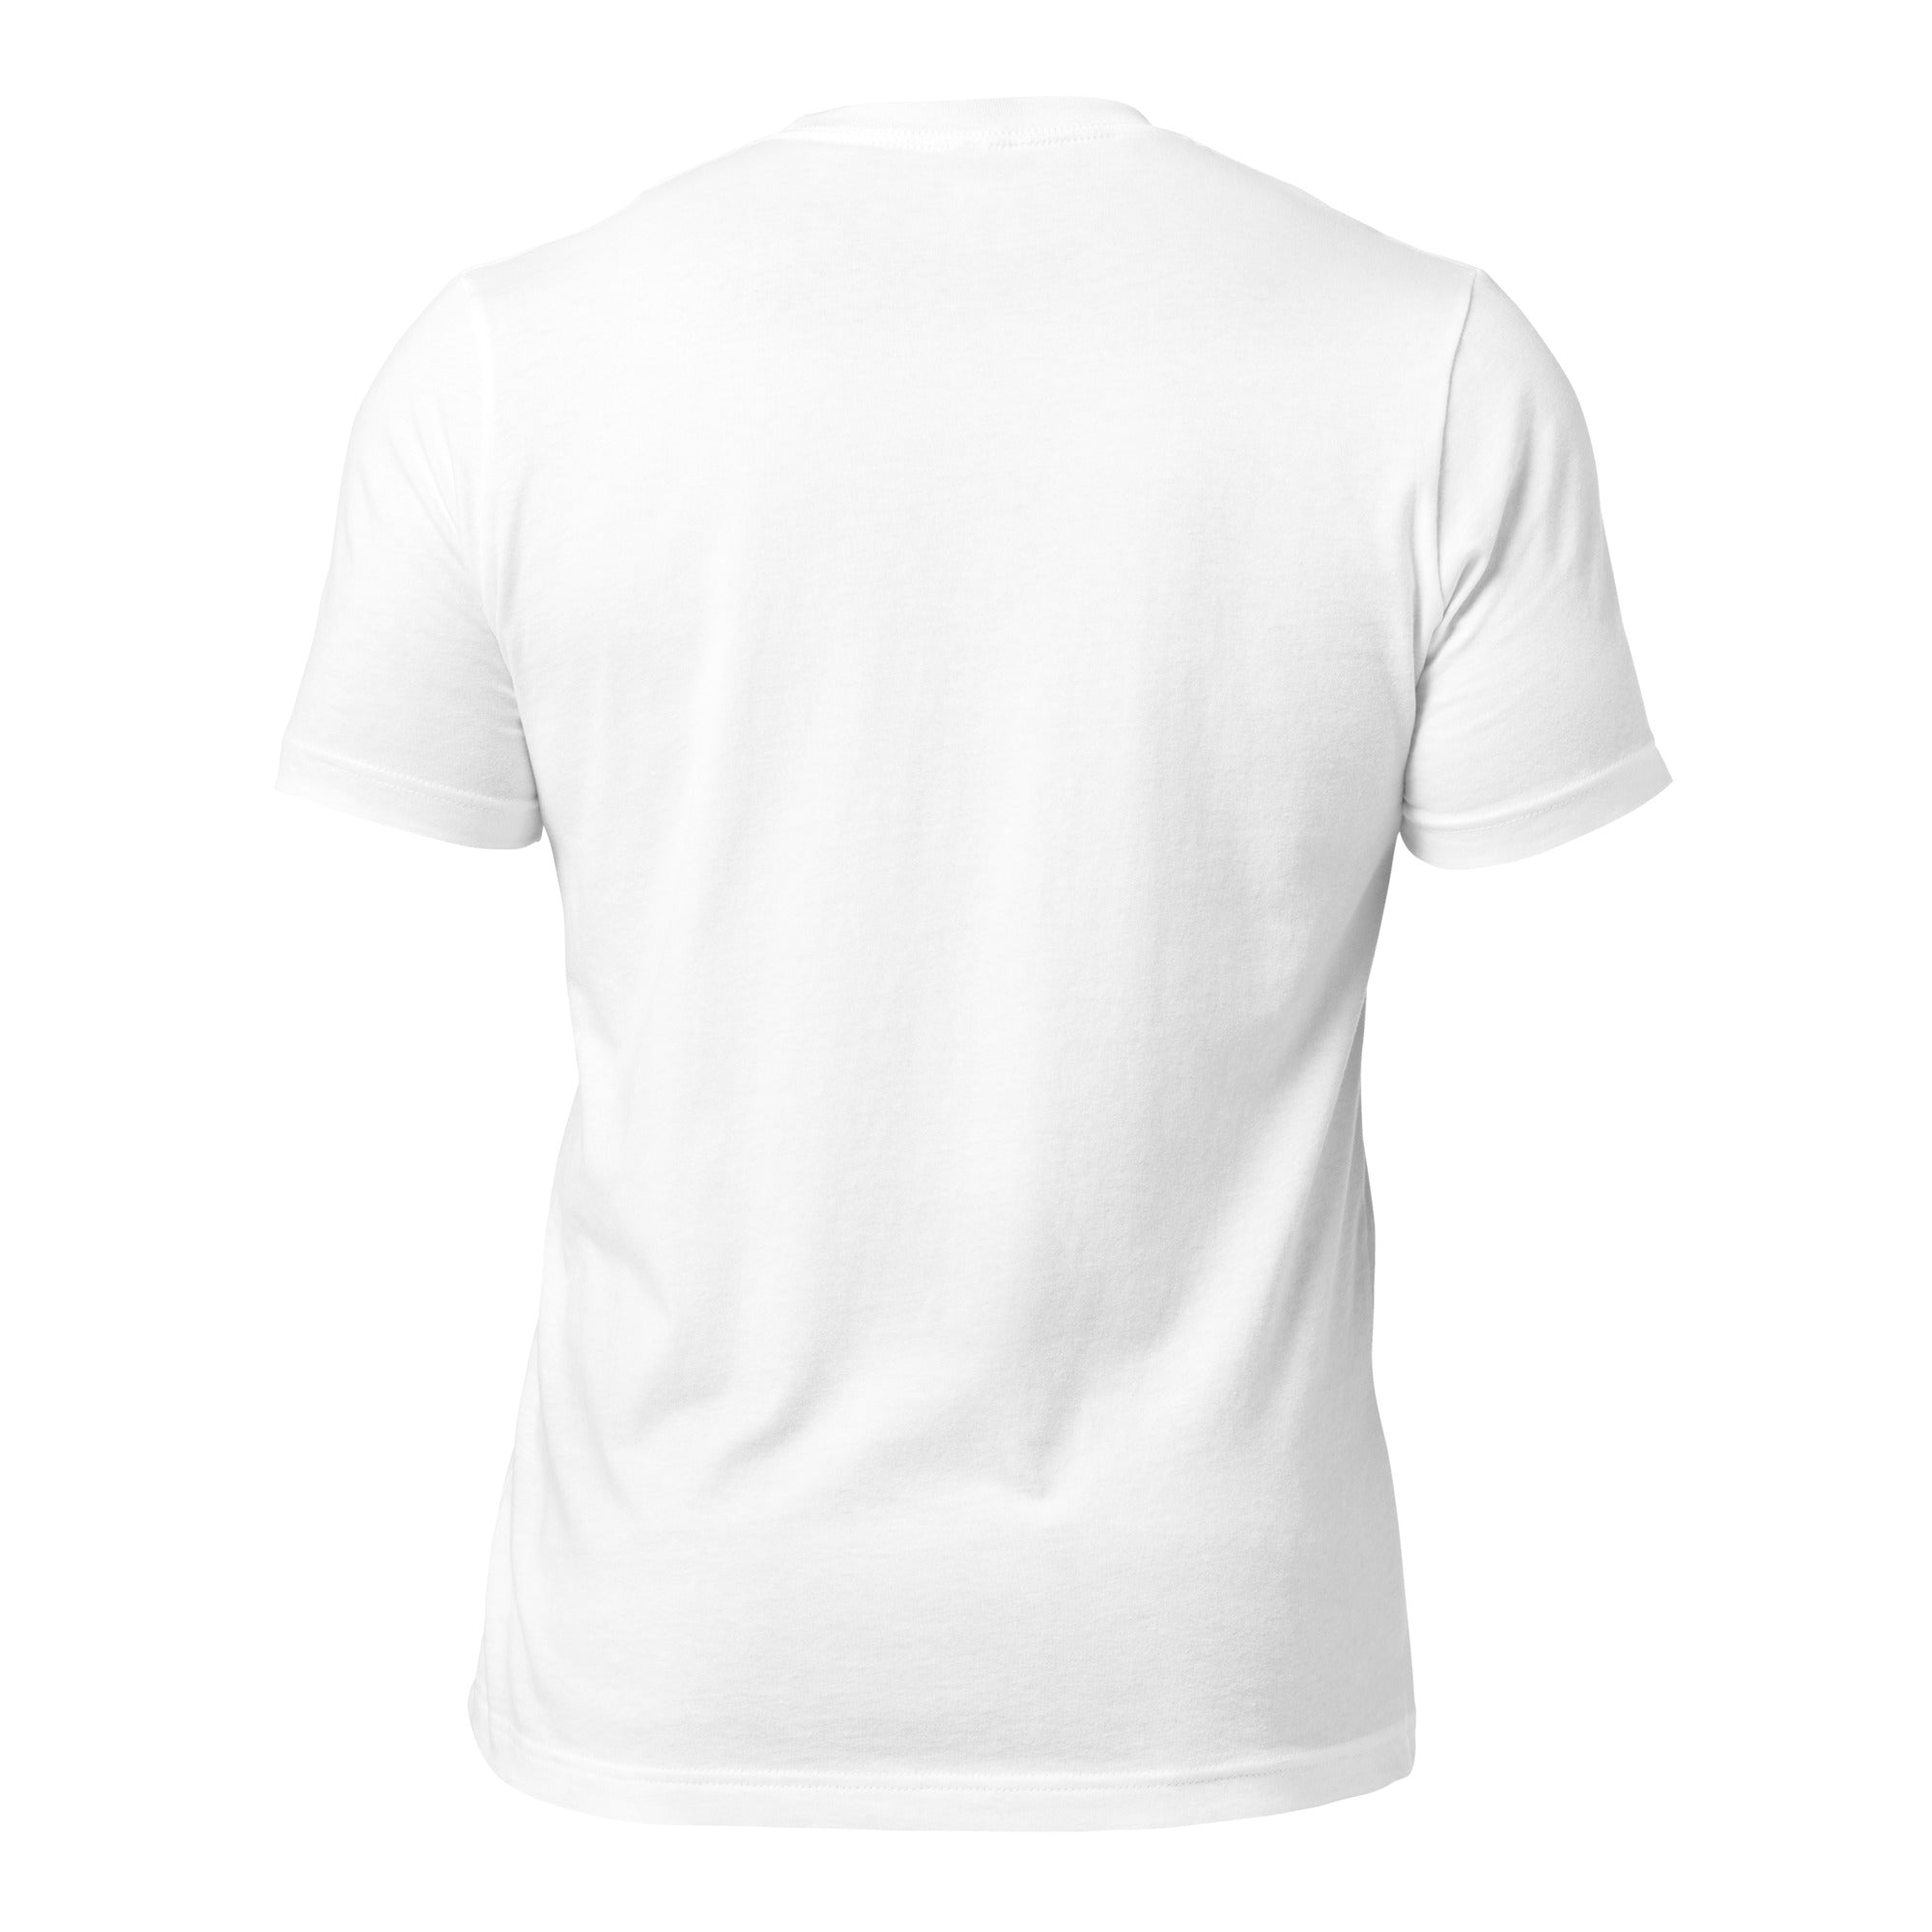 T-shirt en coton unisexe Make Bouillabaisse Not War sur couleurs claires